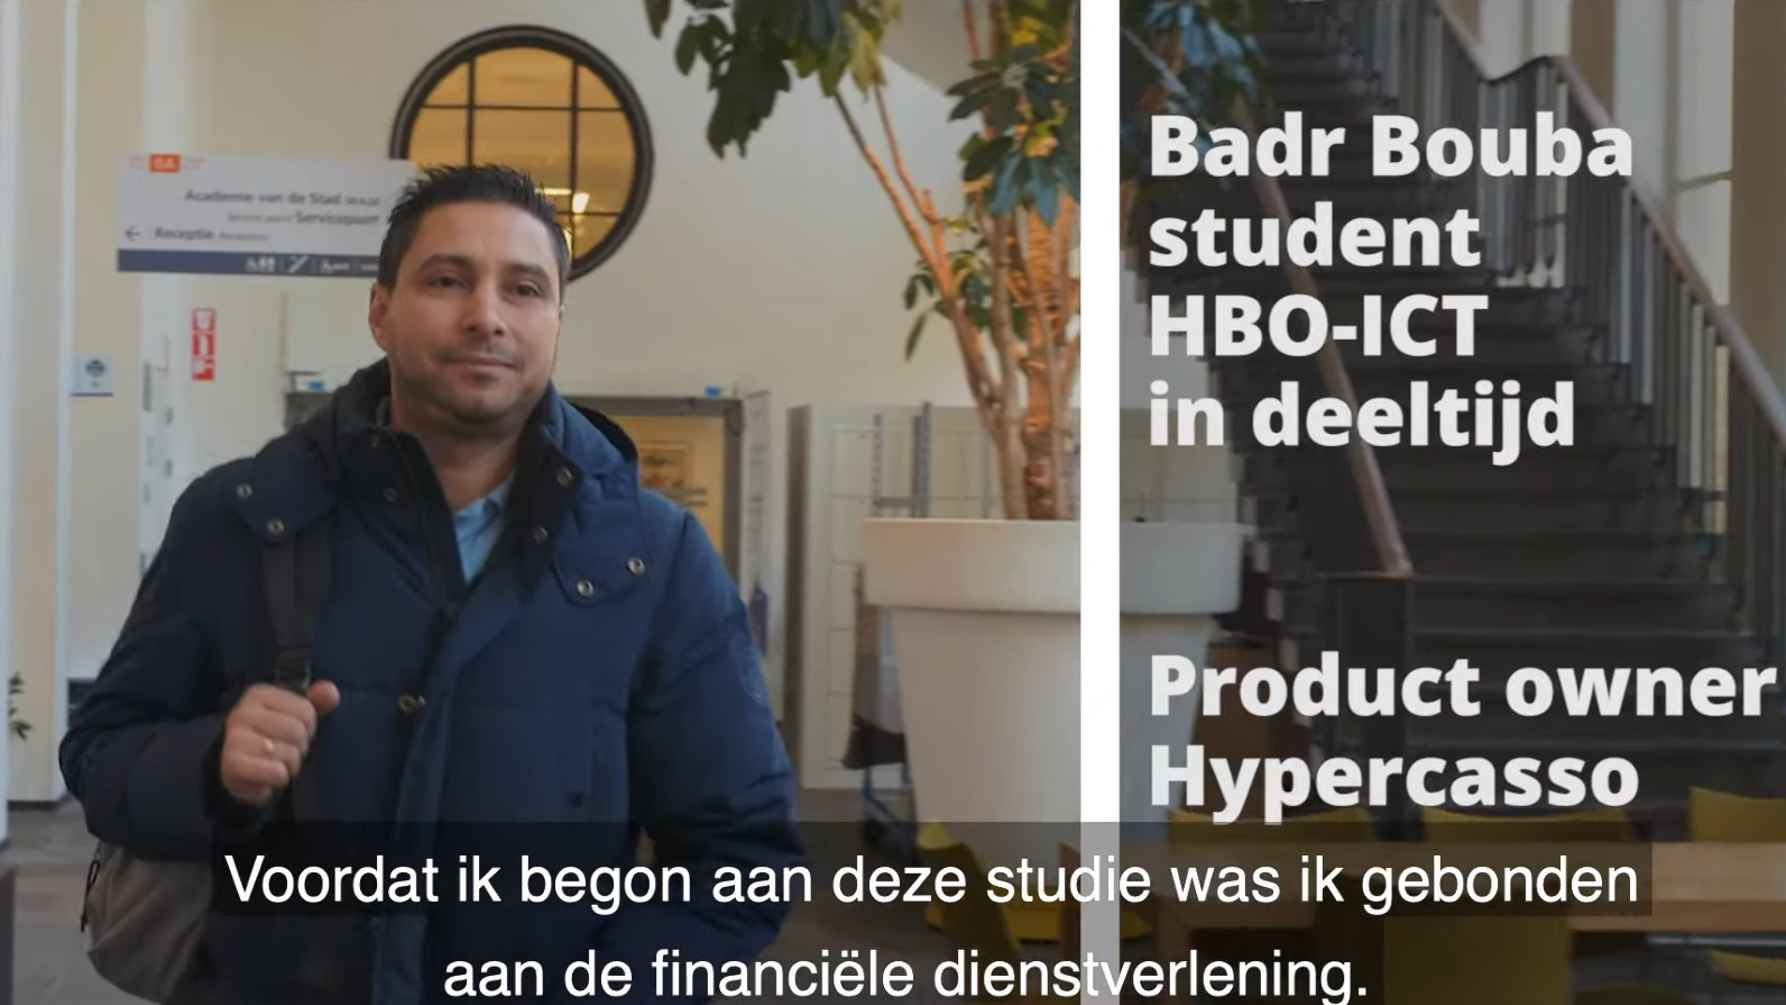 Studeren in deeltijd, het verhaal van Badr Bouba, student HBO-ICT deeltijd